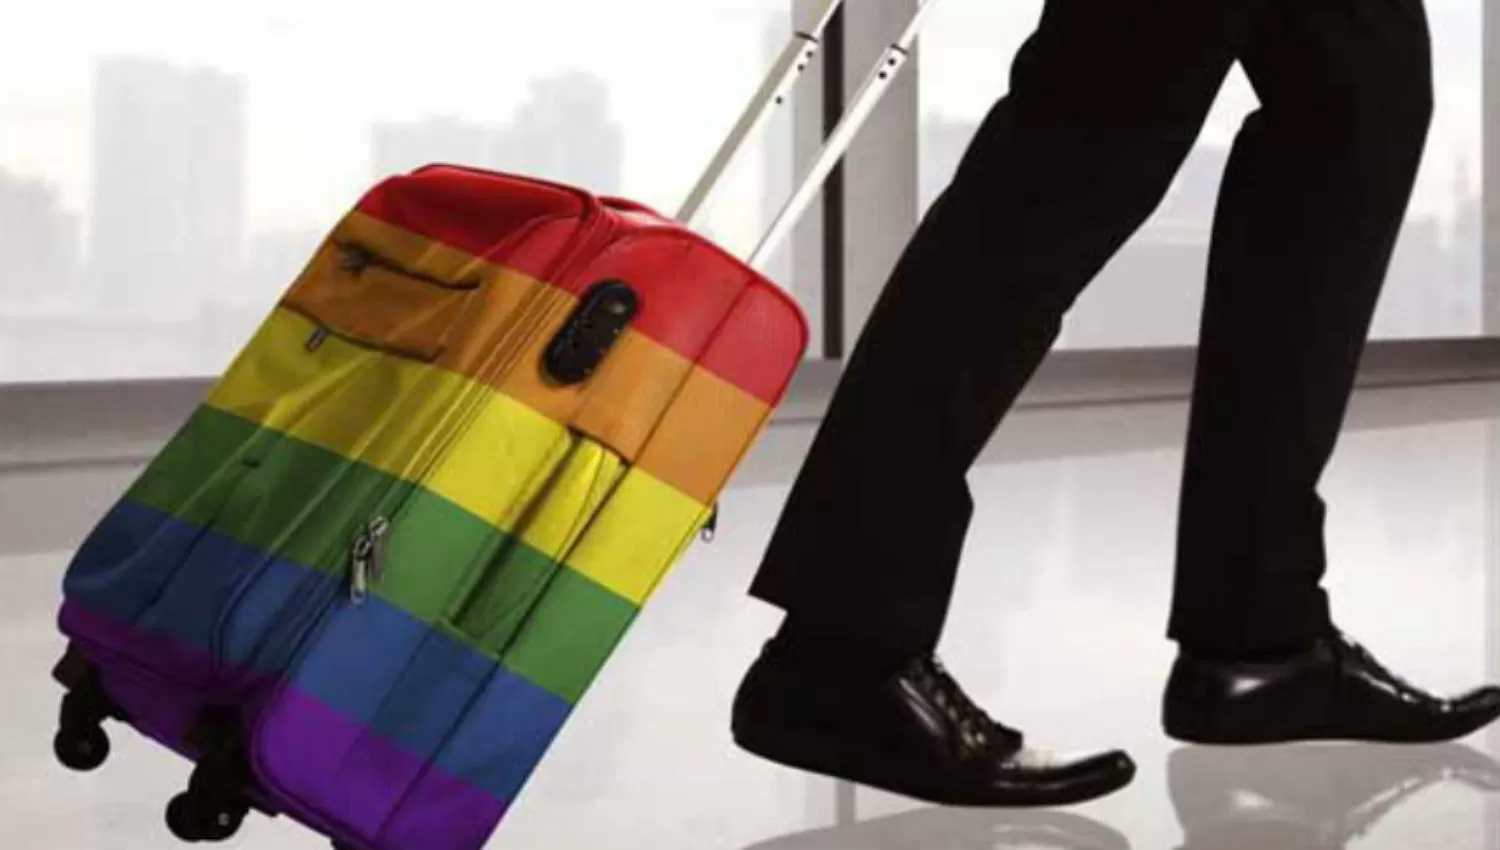 A LA ESPERA. El Turismo LGBT es una modalidad que se ha ido implementando en los últimos años en diversos destinos.